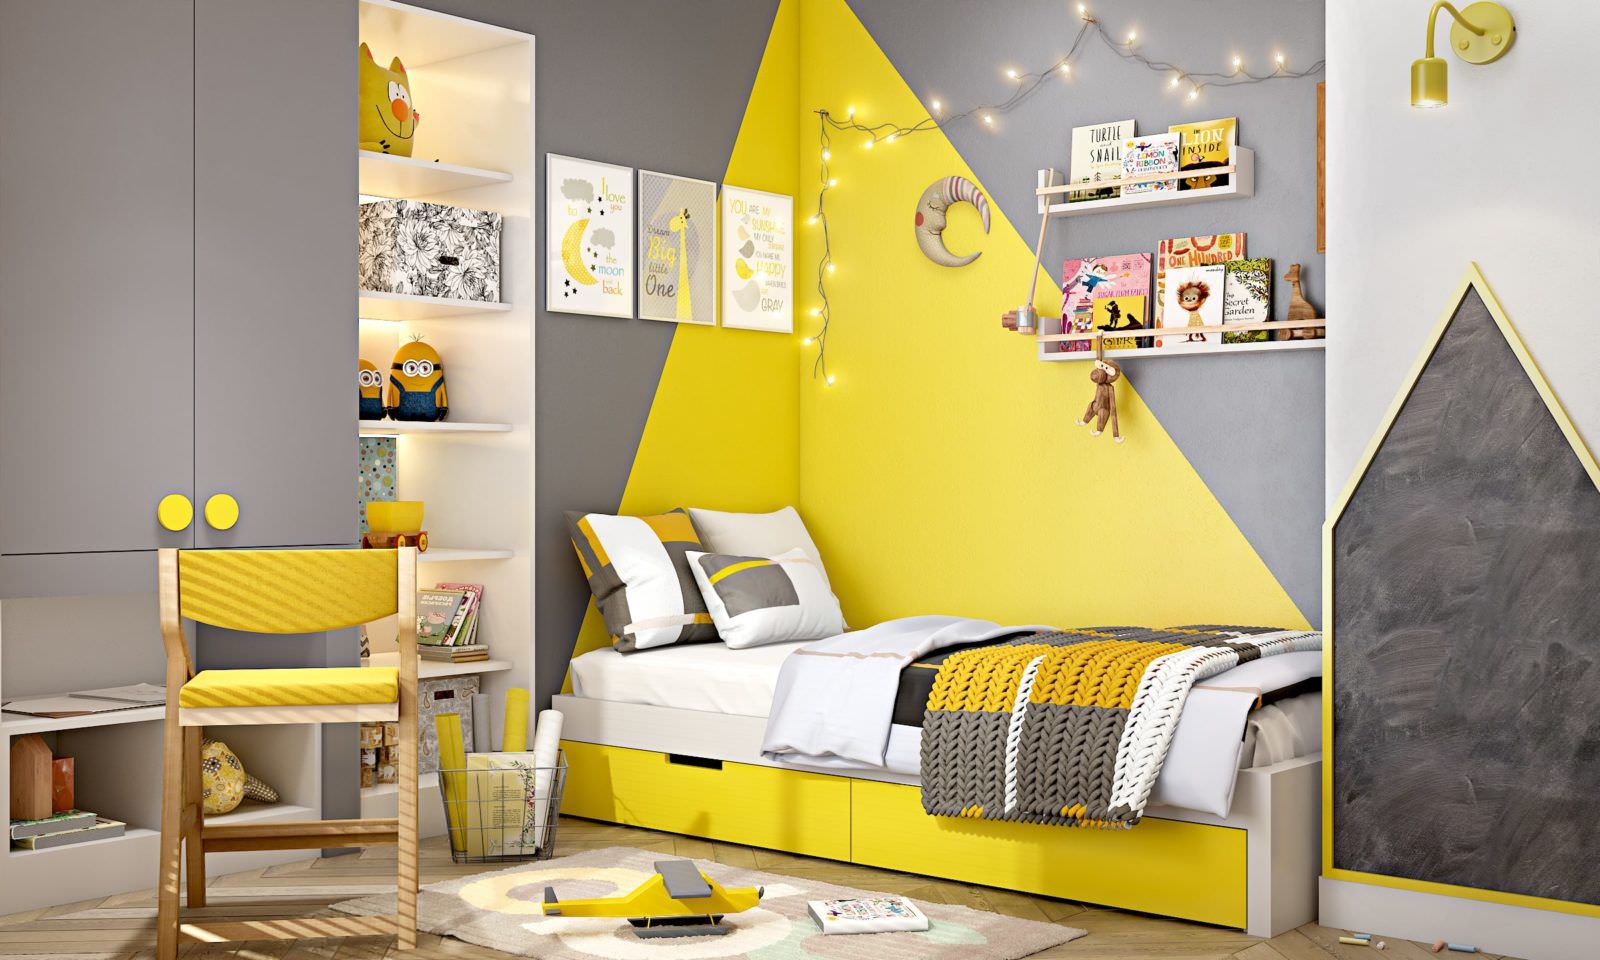 Kết hợp màu vàng và màu xám tạo nên một không gian phòng ngủ độc đáo, sáng tạo